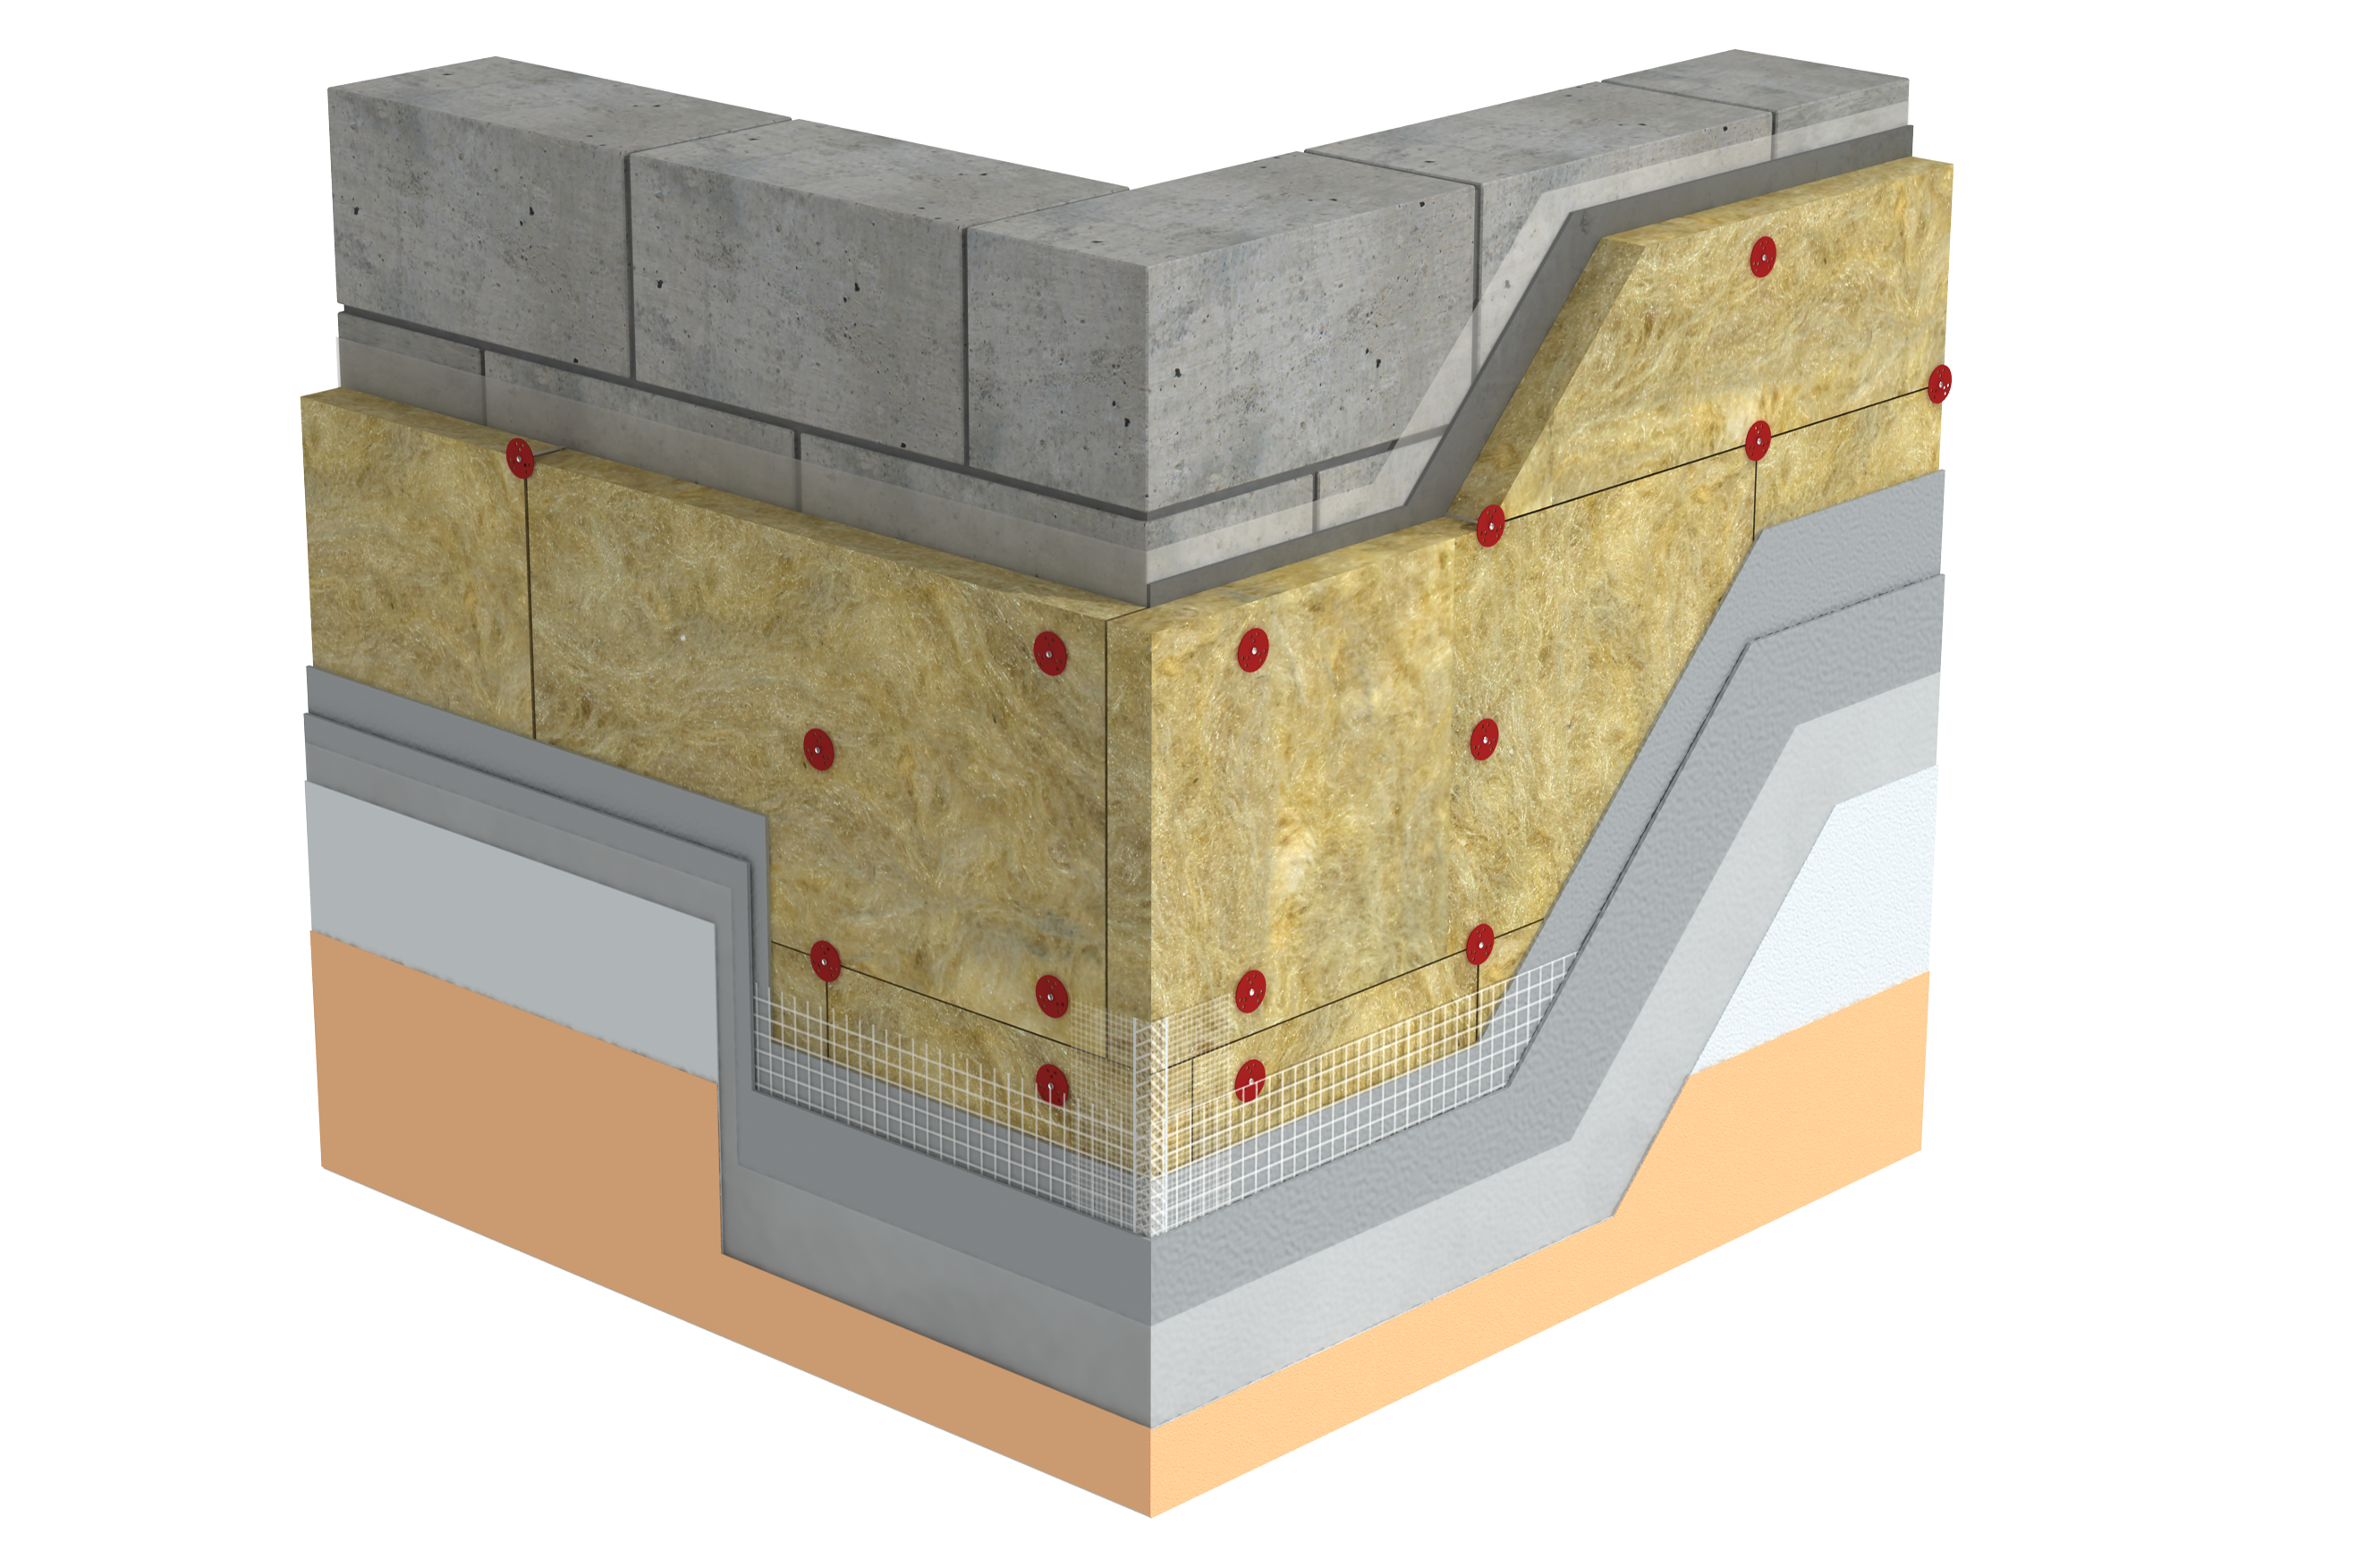 СФТК. Почему именно мокрый штукатурный фасад и как его реализовать с применением каменной ваты